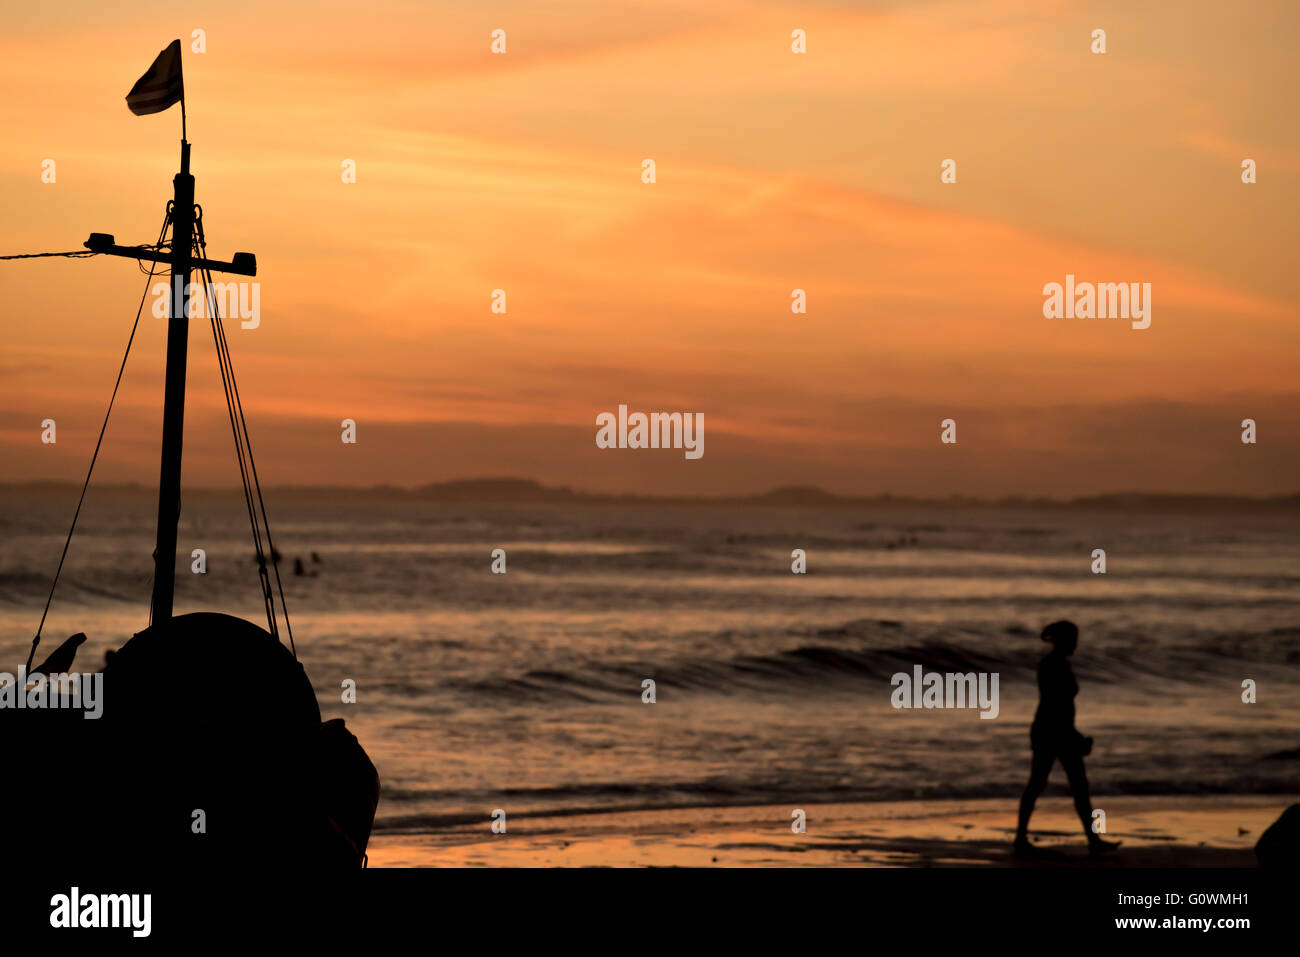 La baia di spiaggia paesaggio al tramonto del tempo, vacanze estive paesaggi con barche a vela silhouette e turisti. Foto Stock